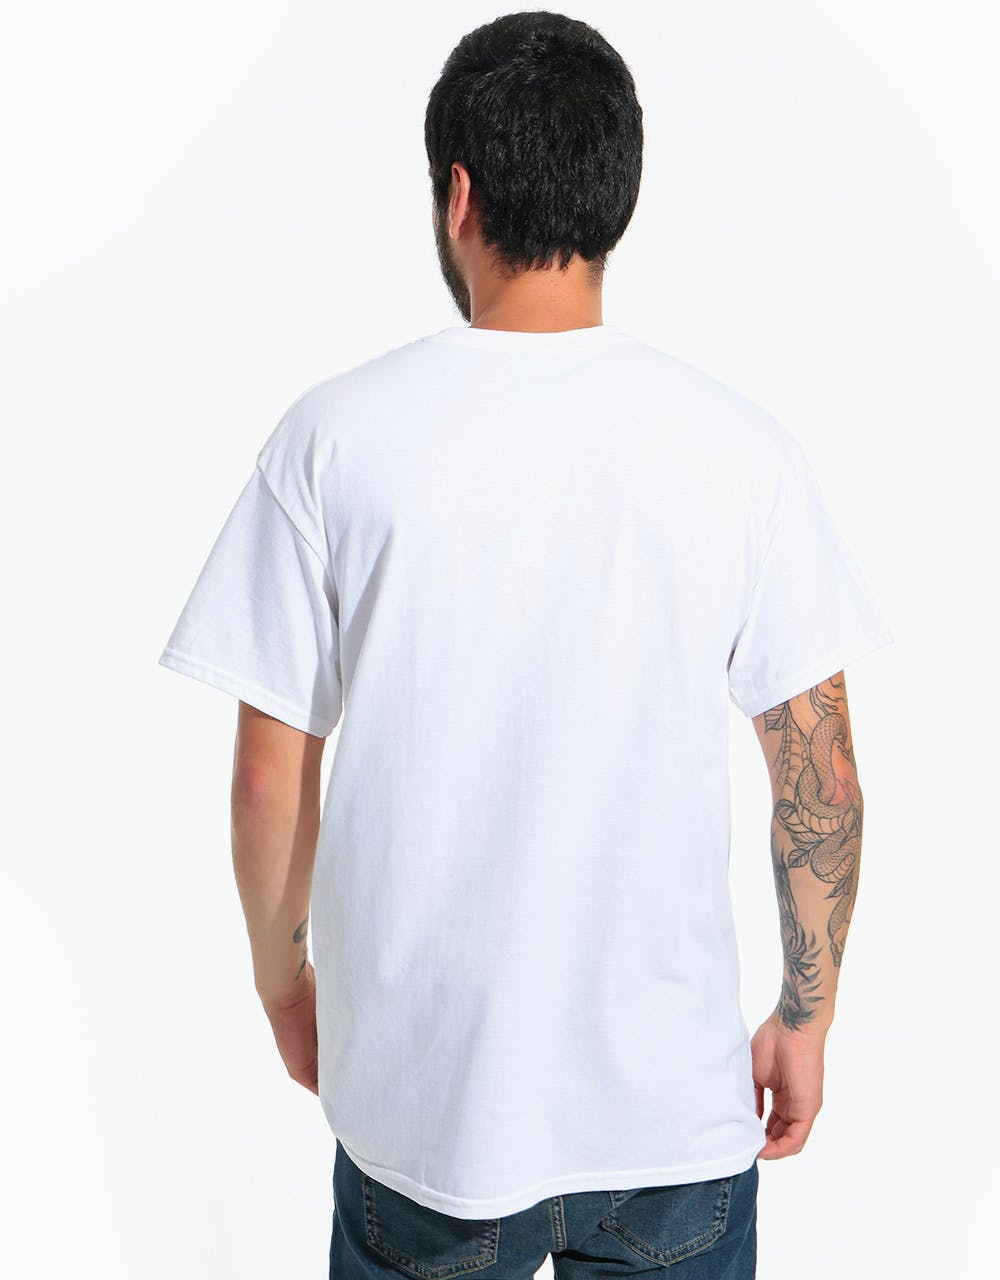 Thrasher x Venture T-Shirt - White